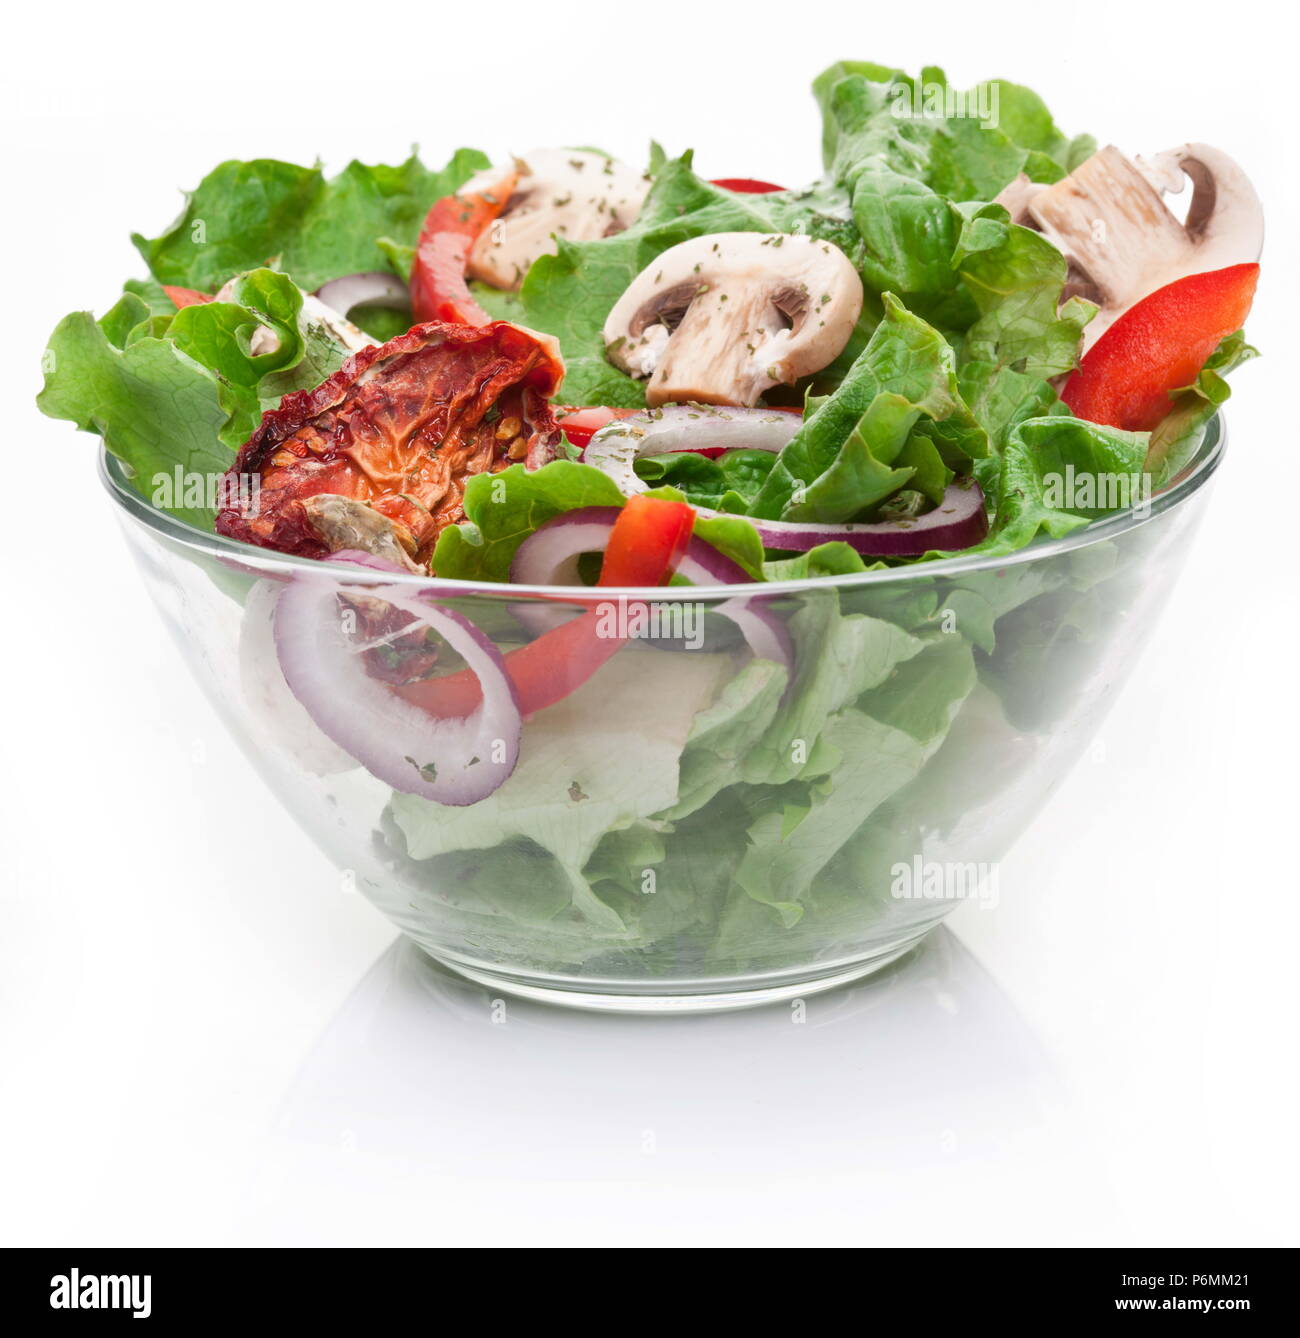 Овощи в стеклянной посуде. Салат на белом фоне. Салат на прозрачном фоне. Тарелка с салатом.